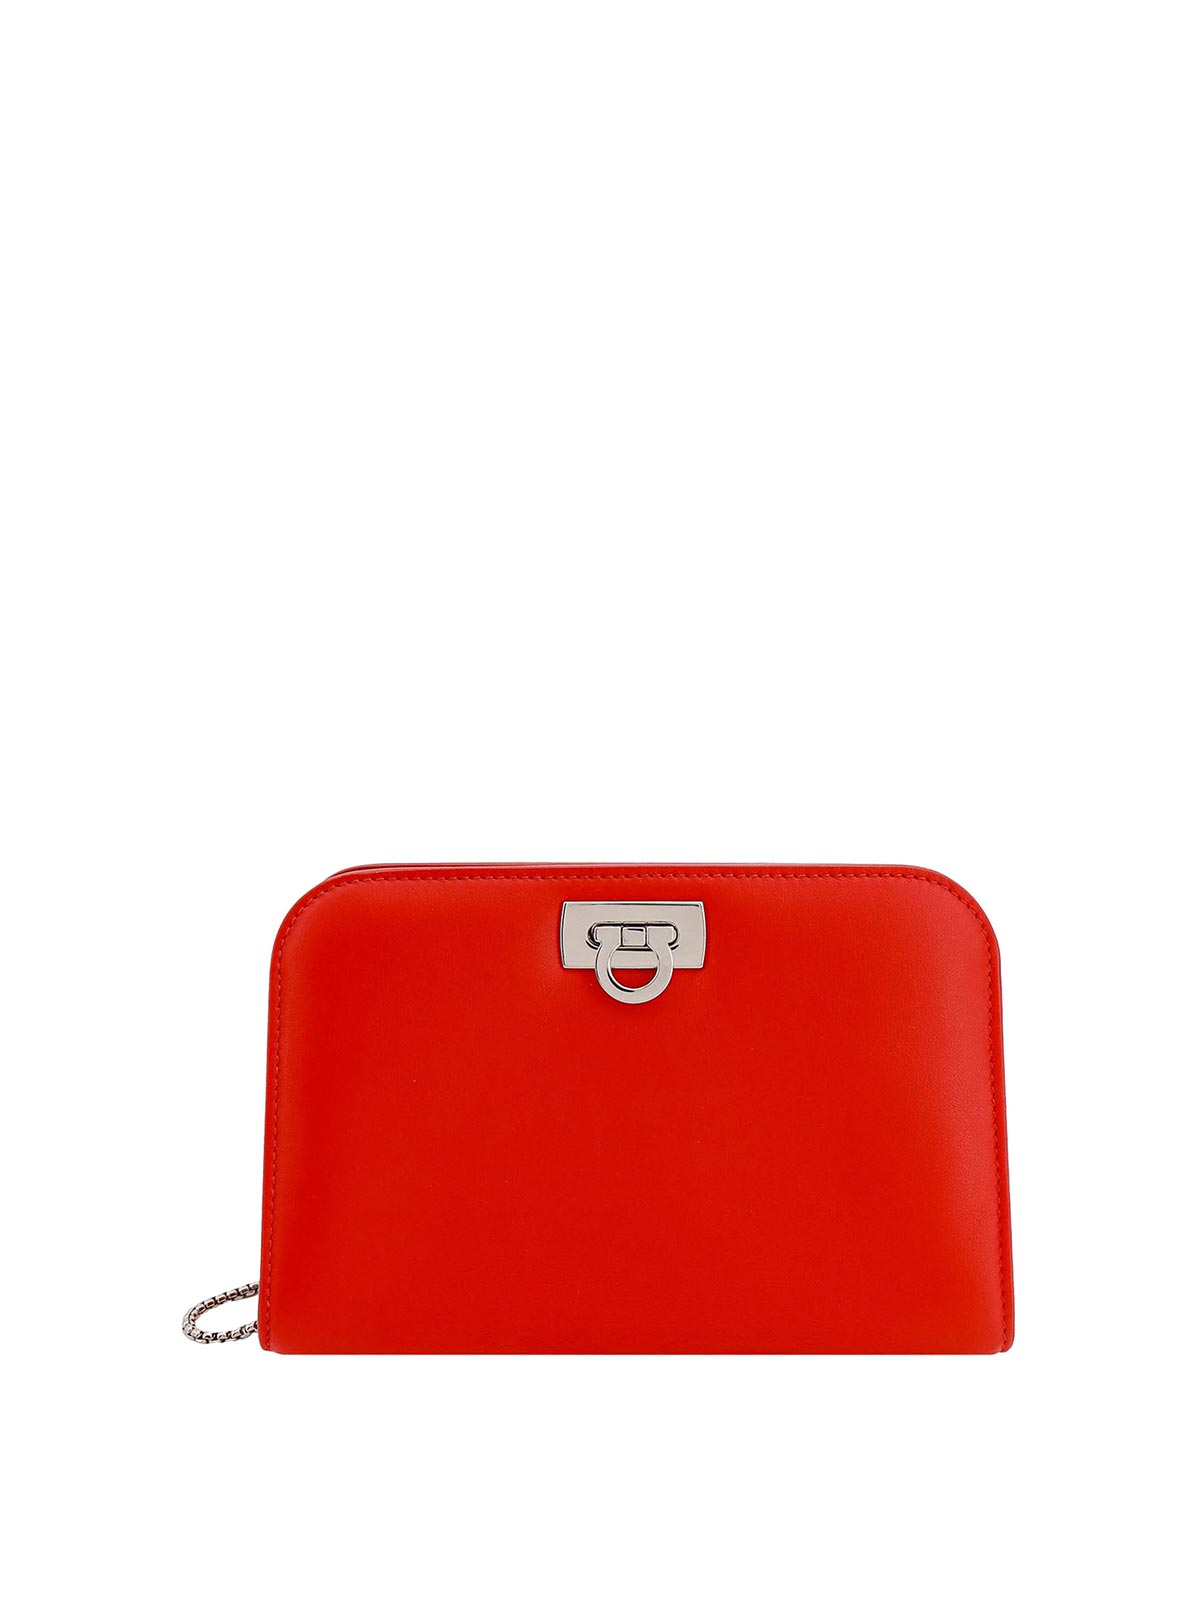 Ferragamo Leather Shoulder Bag Gancini Detail In Red